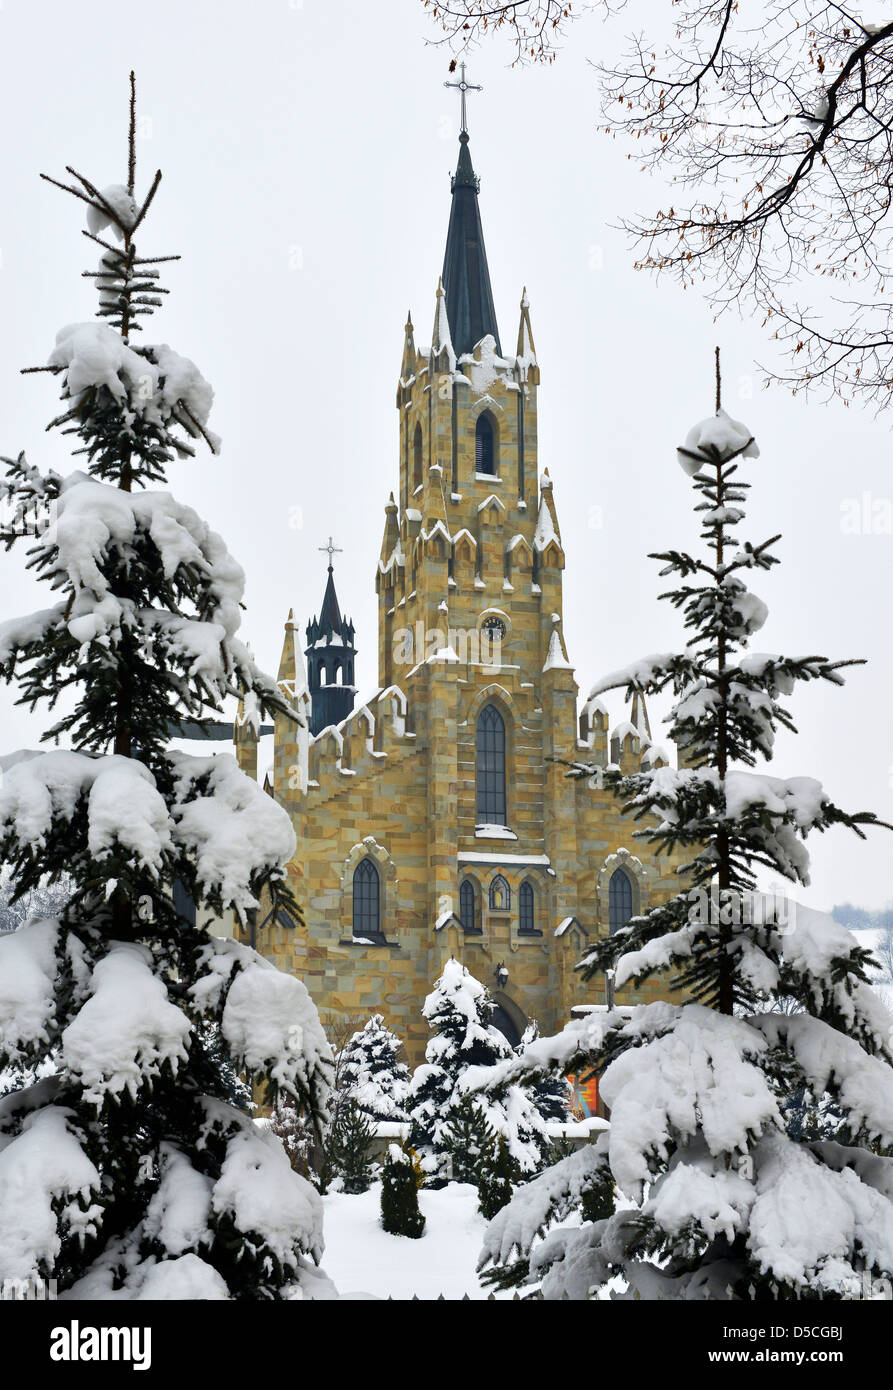 L'église pittoresque village couvert de neige à Chocholow Tatras près de Zakopane Pologne Banque D'Images